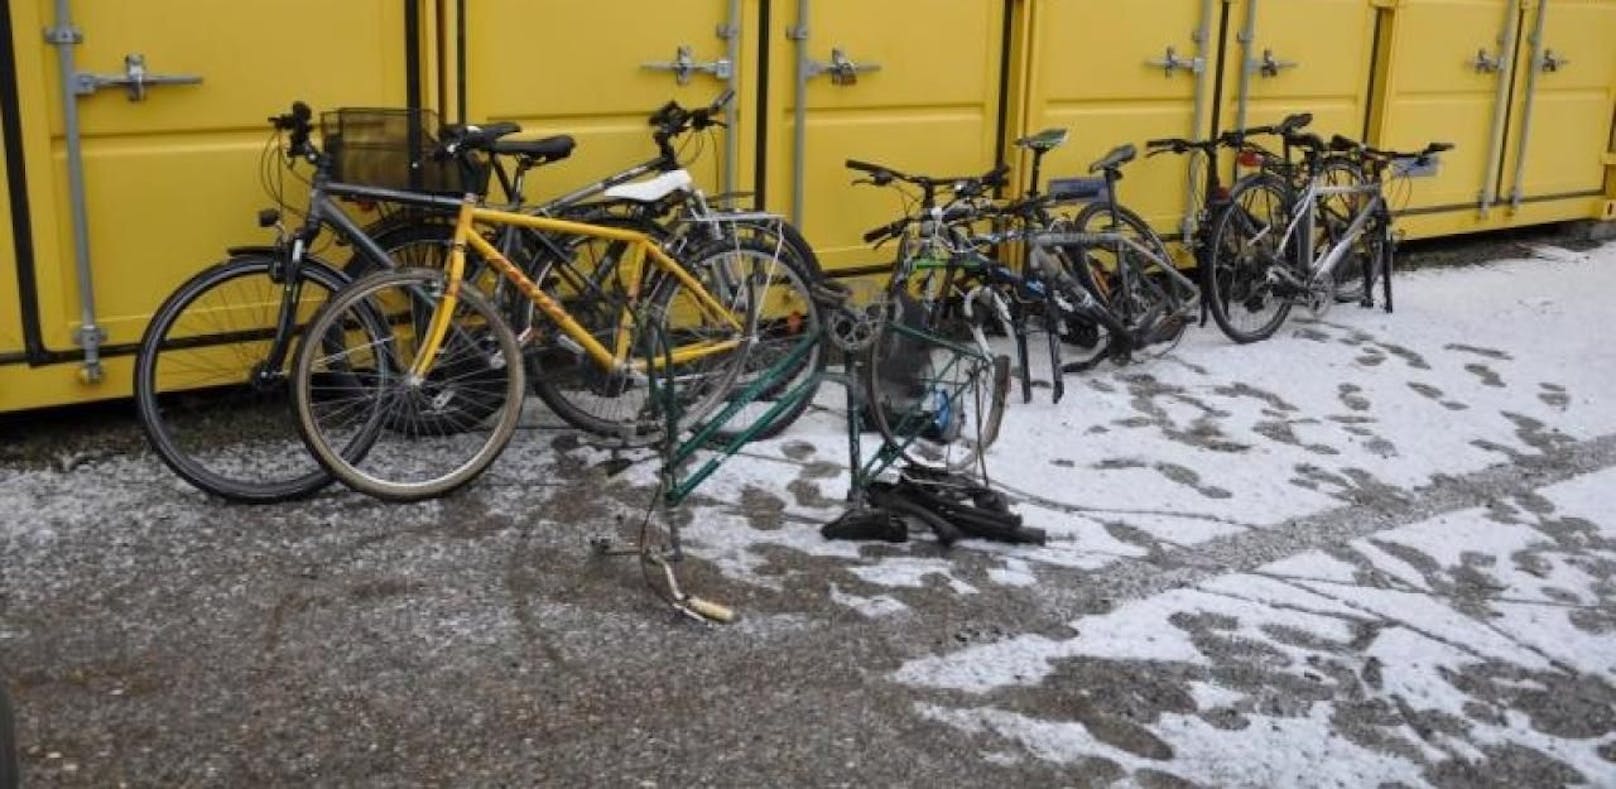 Gestohlene Bikes waren in einem Container versteckt.